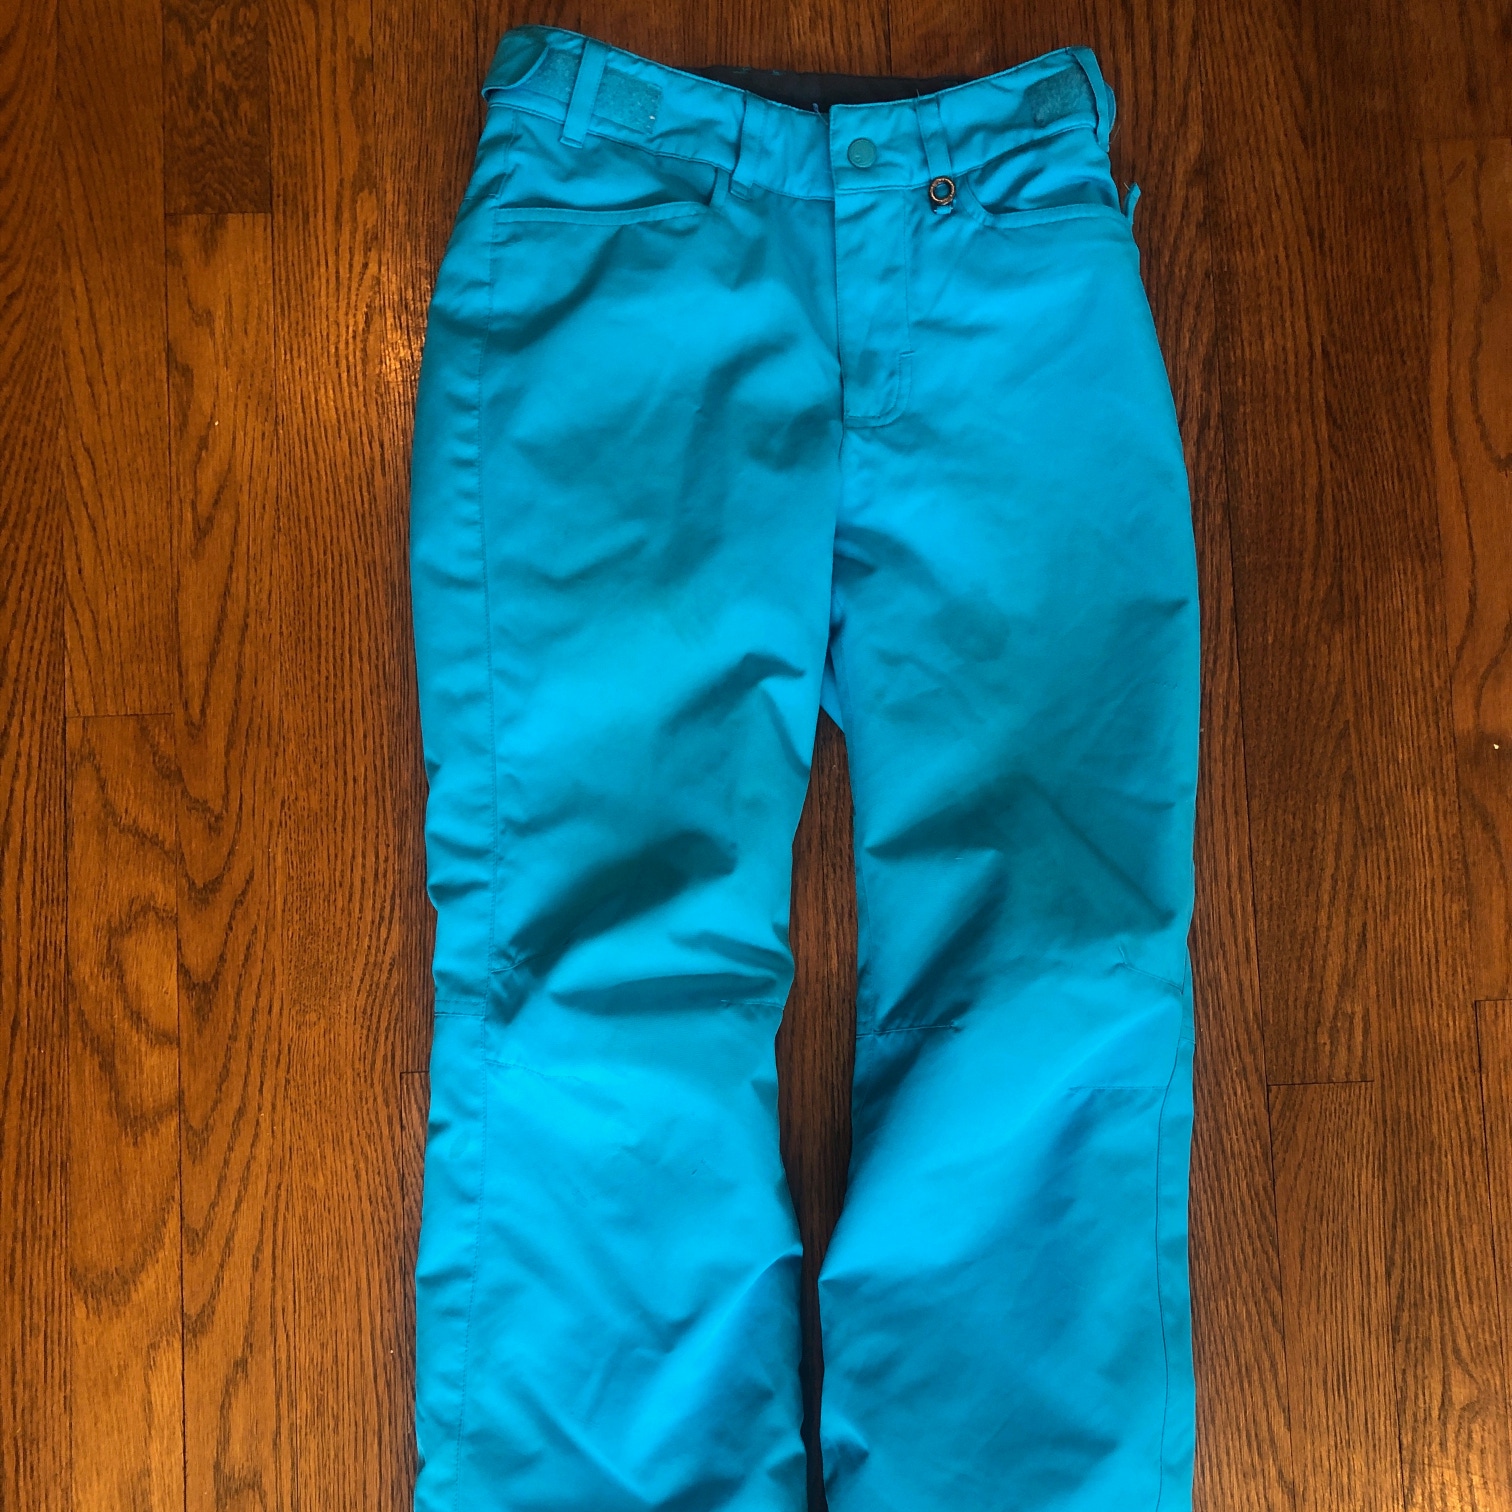 Blue Unisex Youth Used Size 12 Roxy Ski Pants (Youth size Large/12)